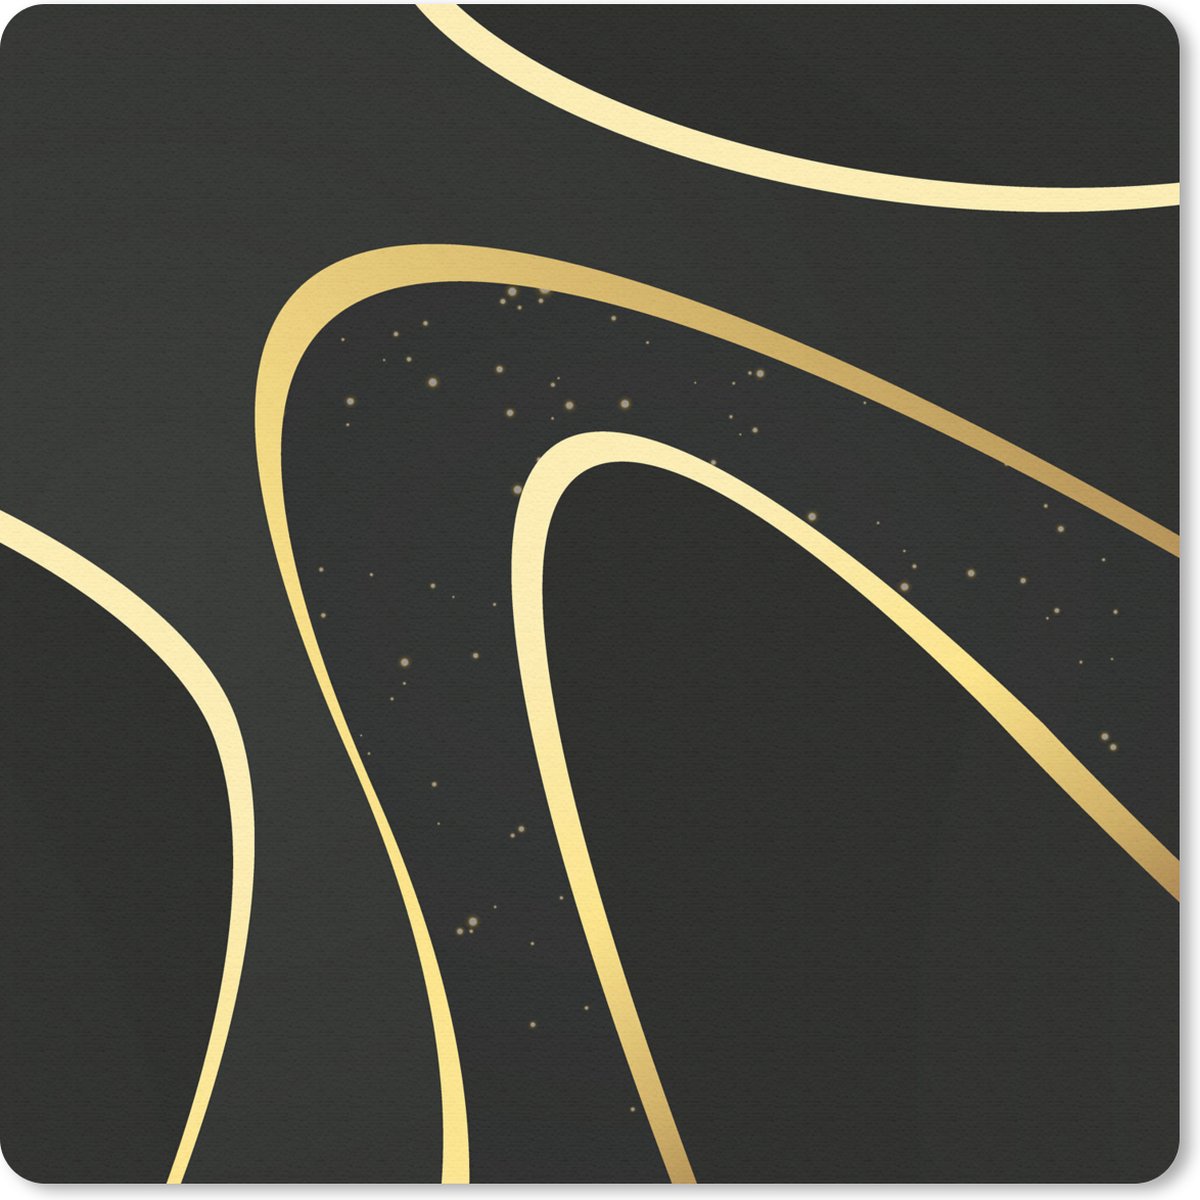 Muismat - Mousepad - Gouden golven op een zwarte achtergrond - 30x30 cm - Muismatten